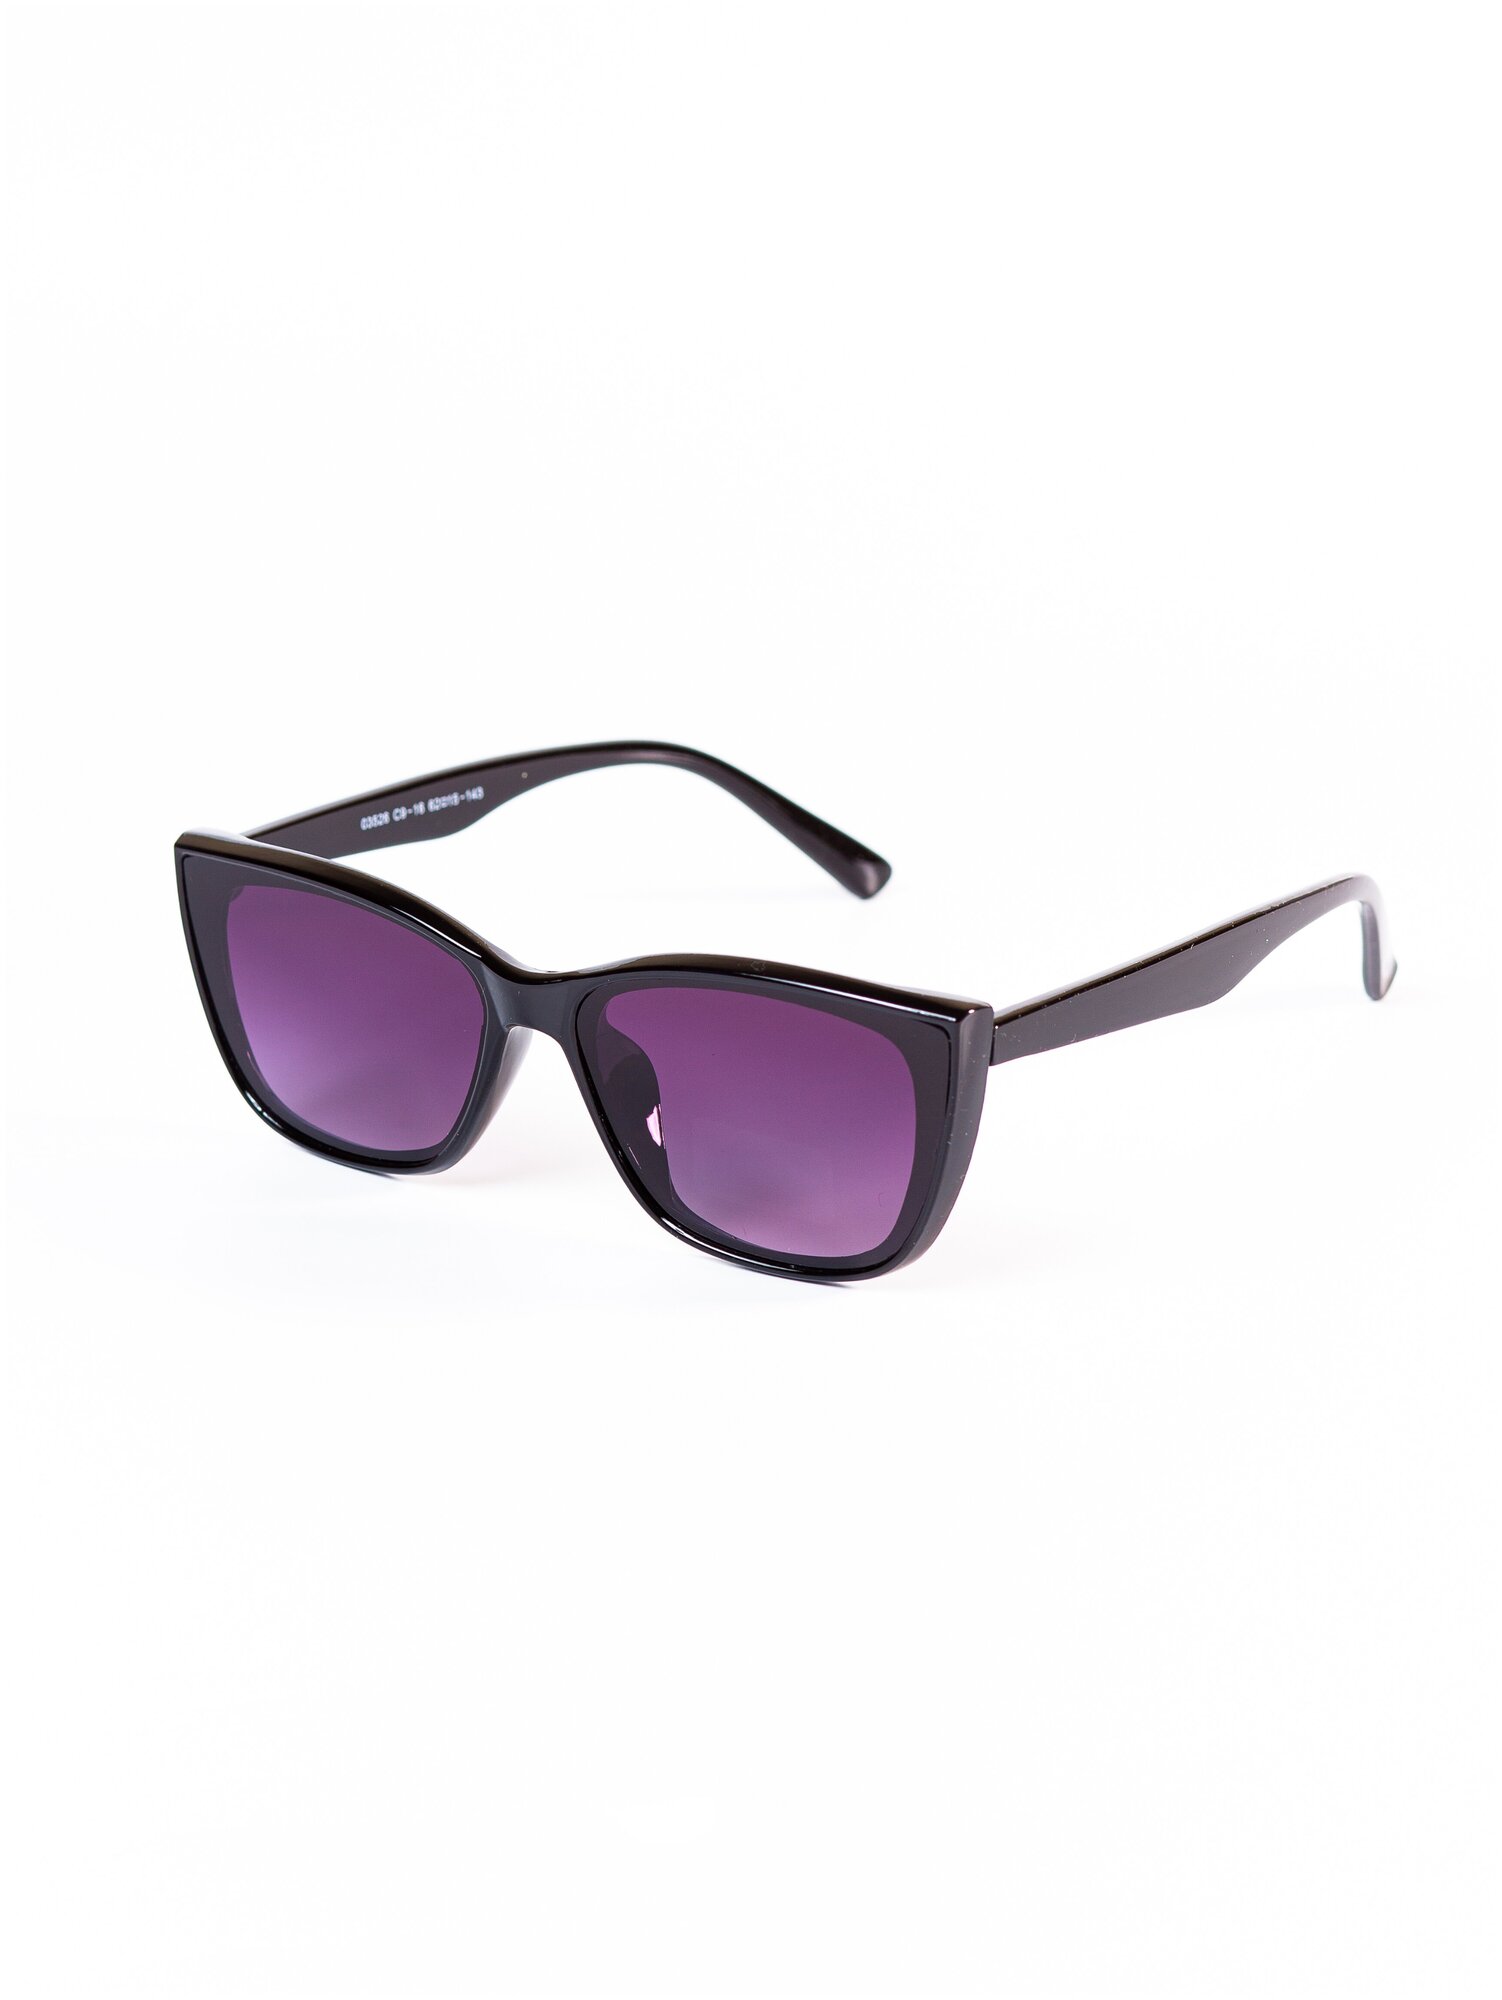 Солнцезащитные очки женские / Оправа кошачий глаз / Стильные очки / Ультрафиолетовый фильтр / UV400 / Чехол в подарок/Модный аксессуар/ 230322253